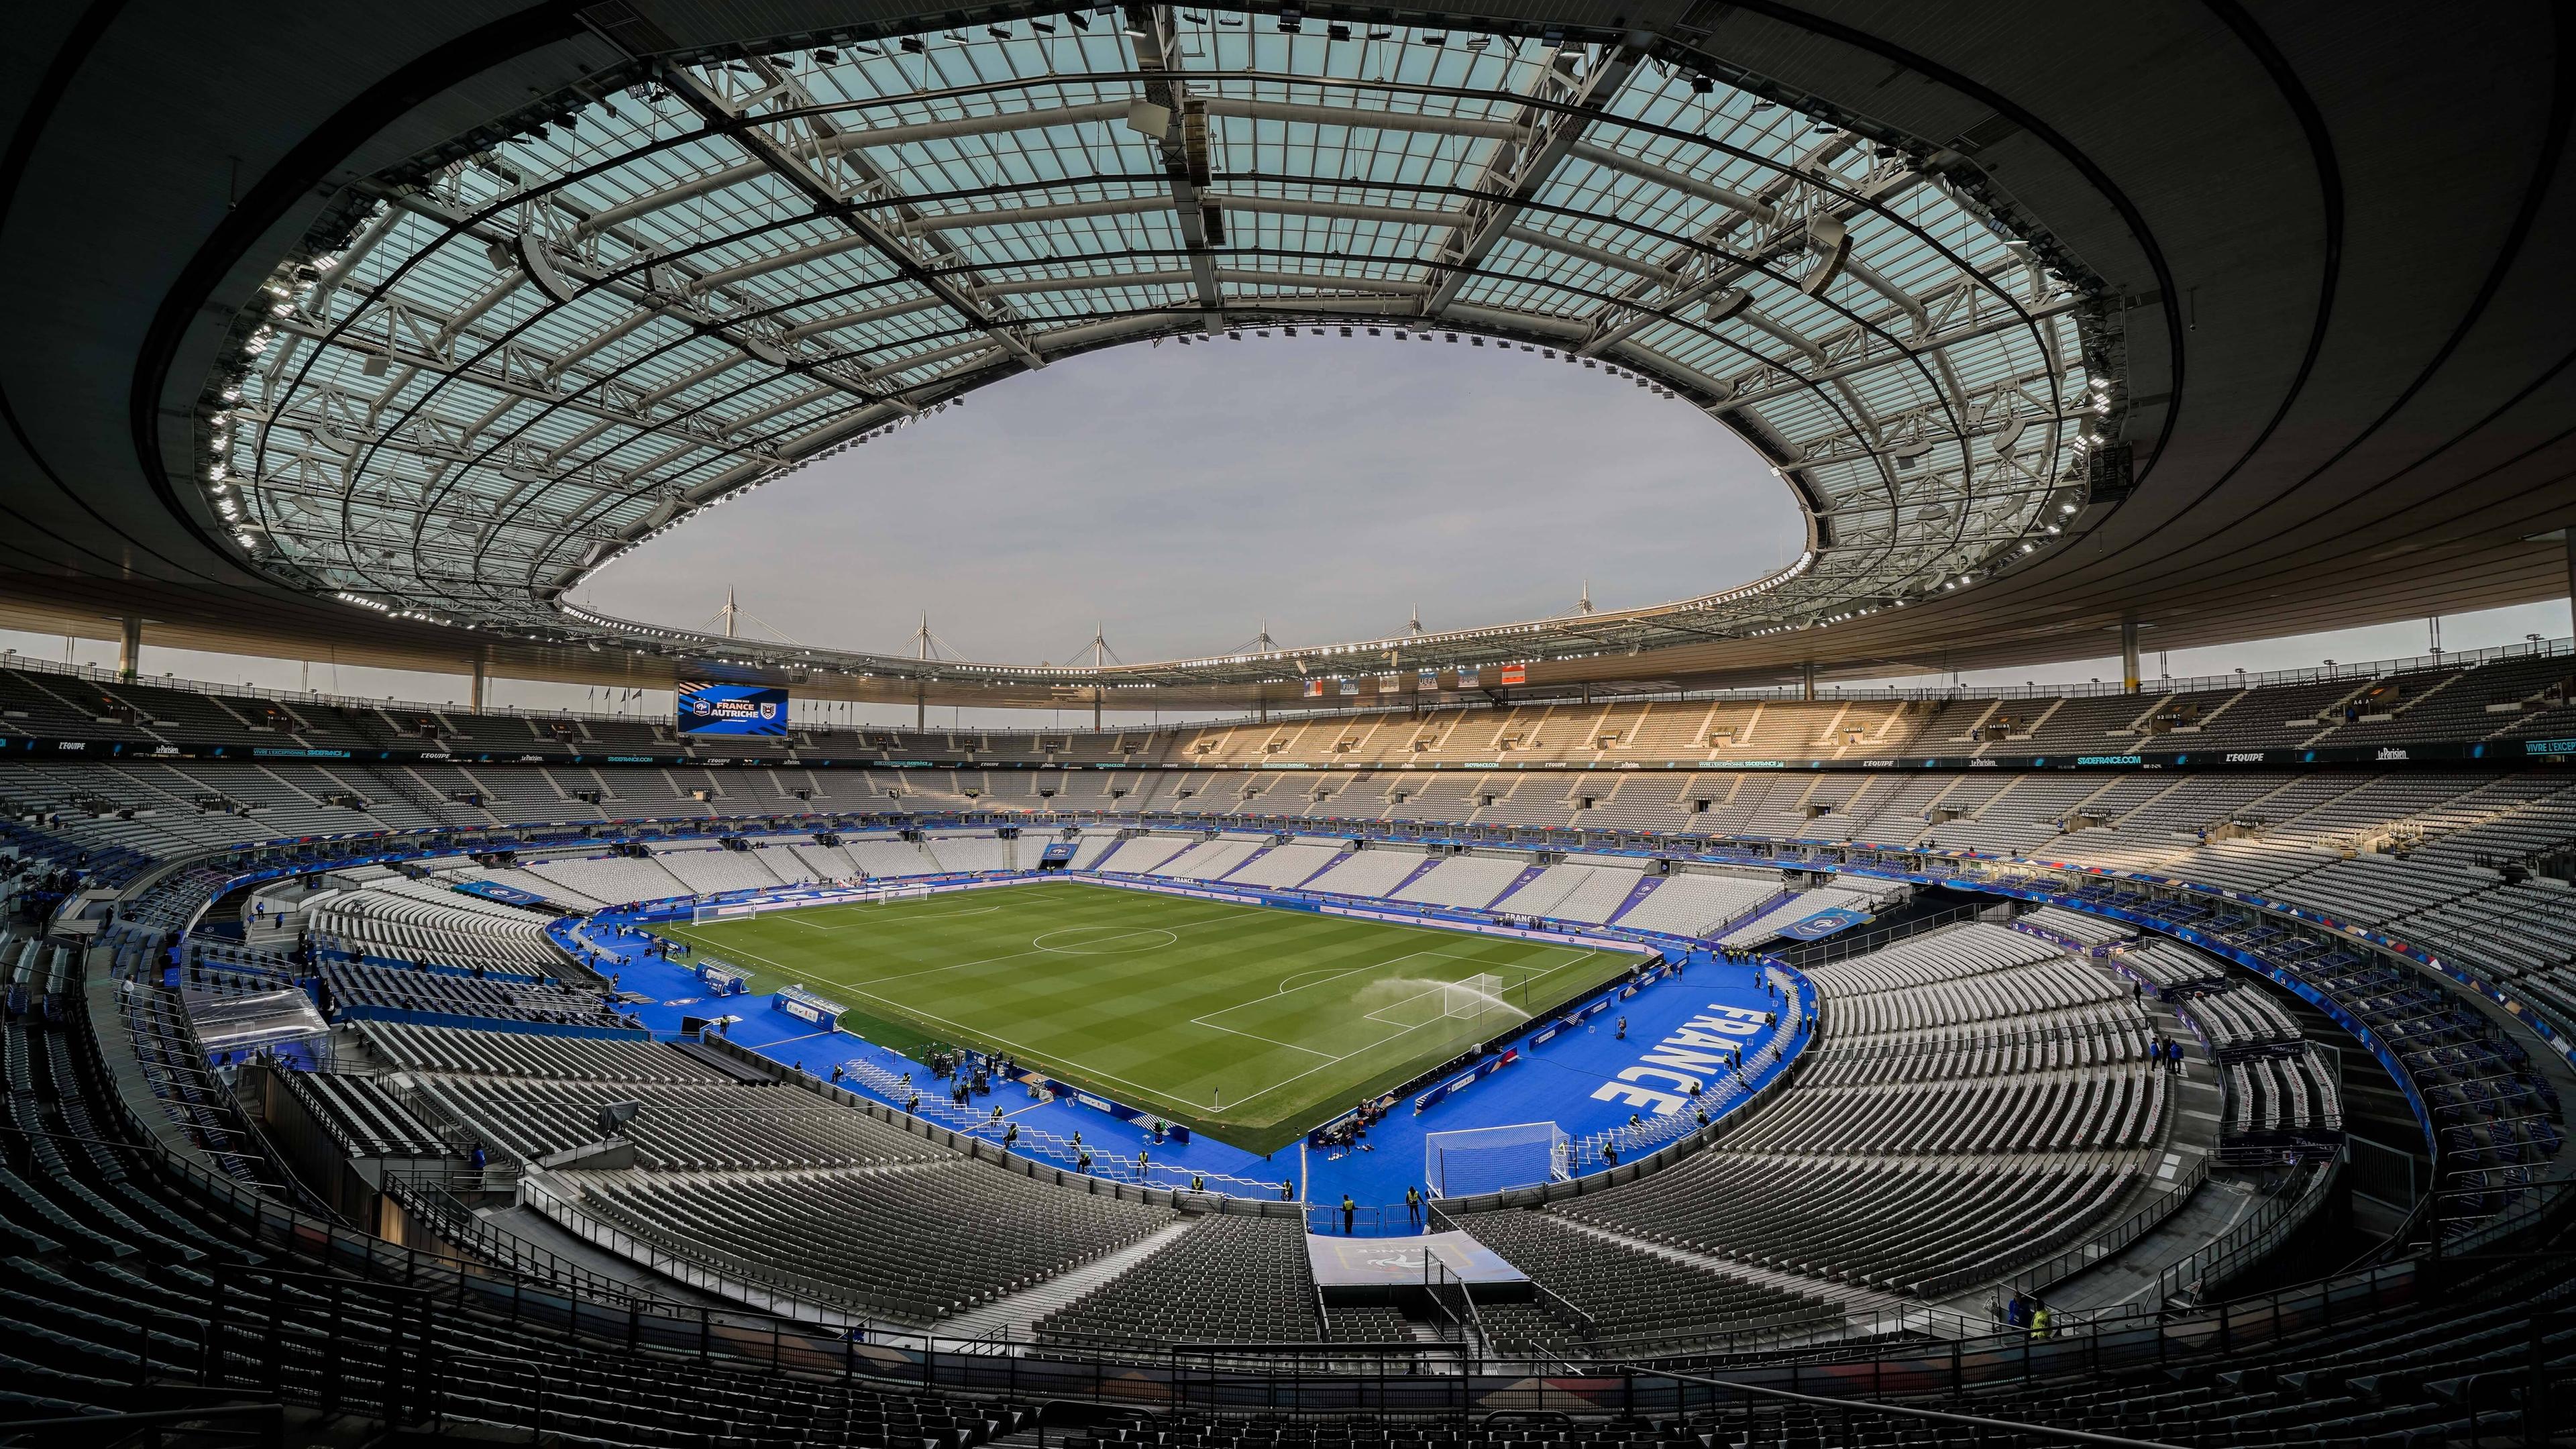 Das Stade de France wird Austragungsort für die Para-Leichathletik-Wettbewerbe sein.